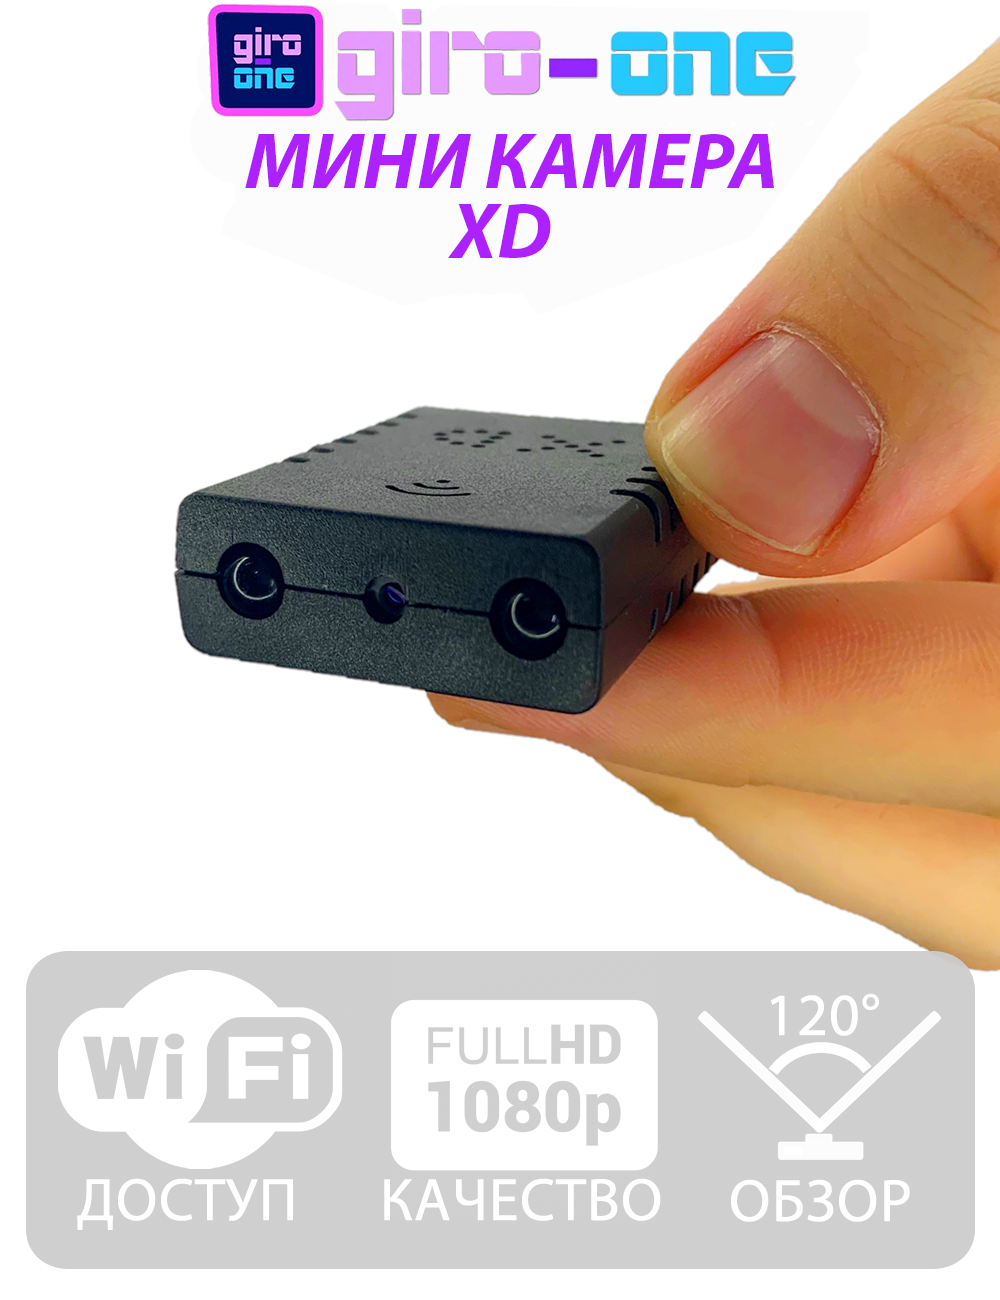 Миниатюрная камера Wi-Fi камера XD с возможностью работать 24/7